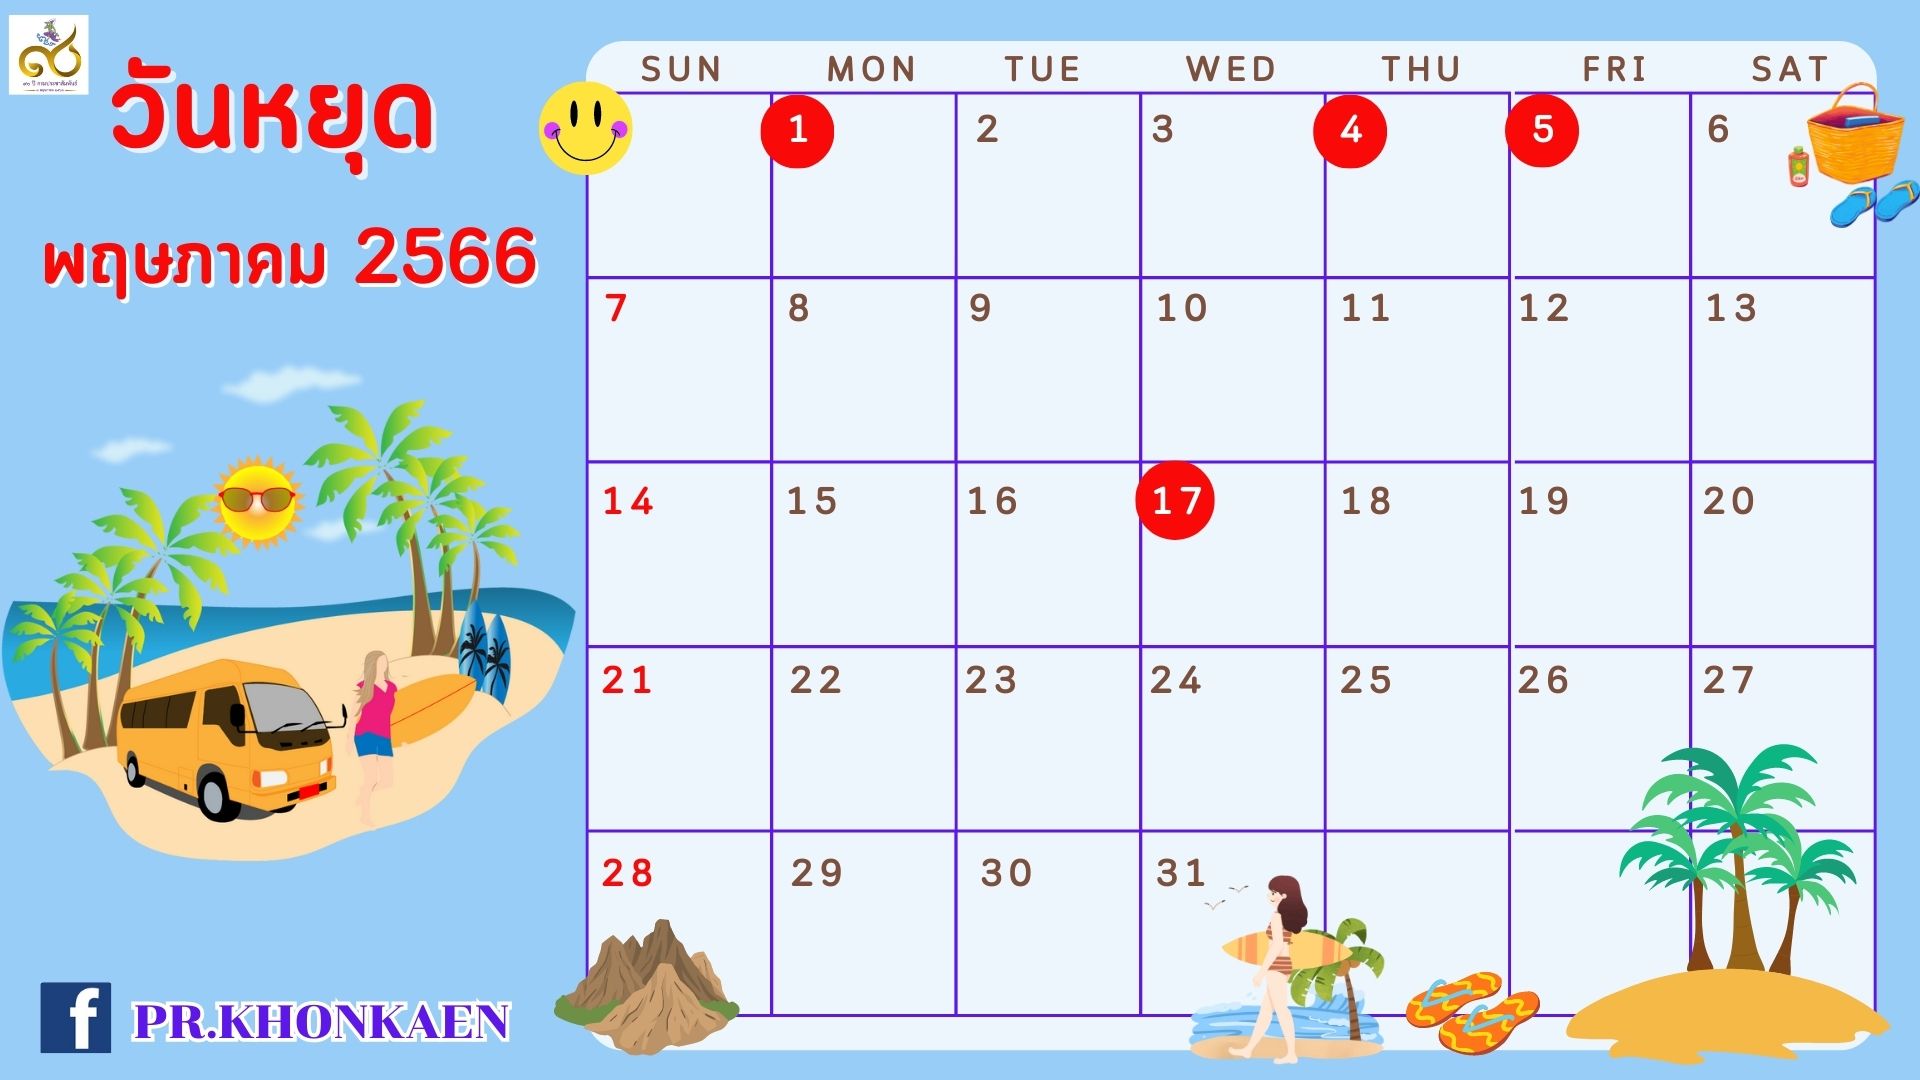 📣 วันหยุดเดือน พฤษภาคม 2566 มาดูกันหยุดวันไหนบ้าง ?